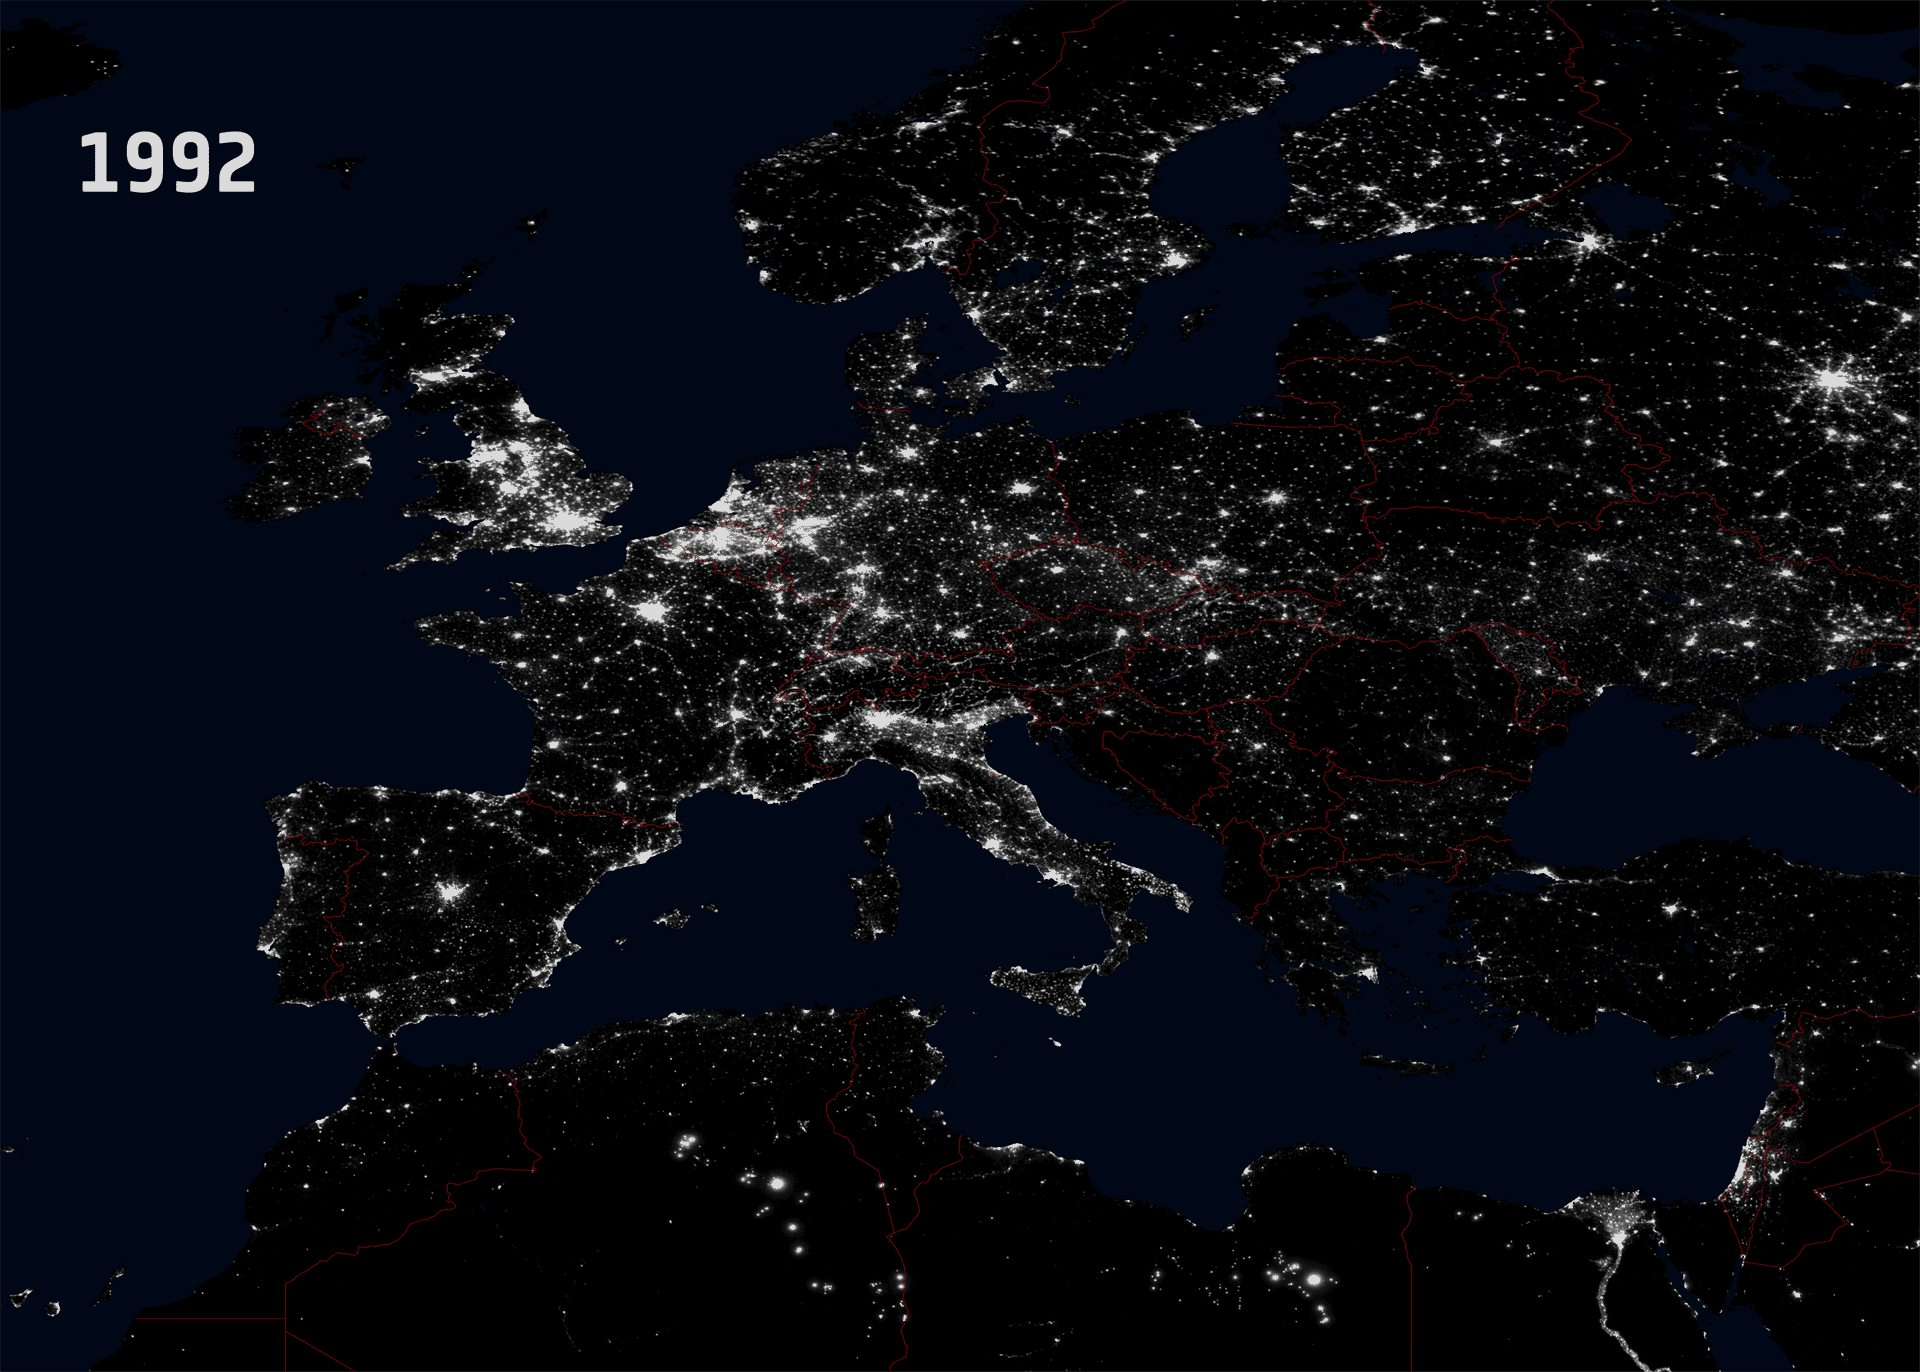 Lichtverschmutzung in Europa im Vergleich: 1992 vs. 2010